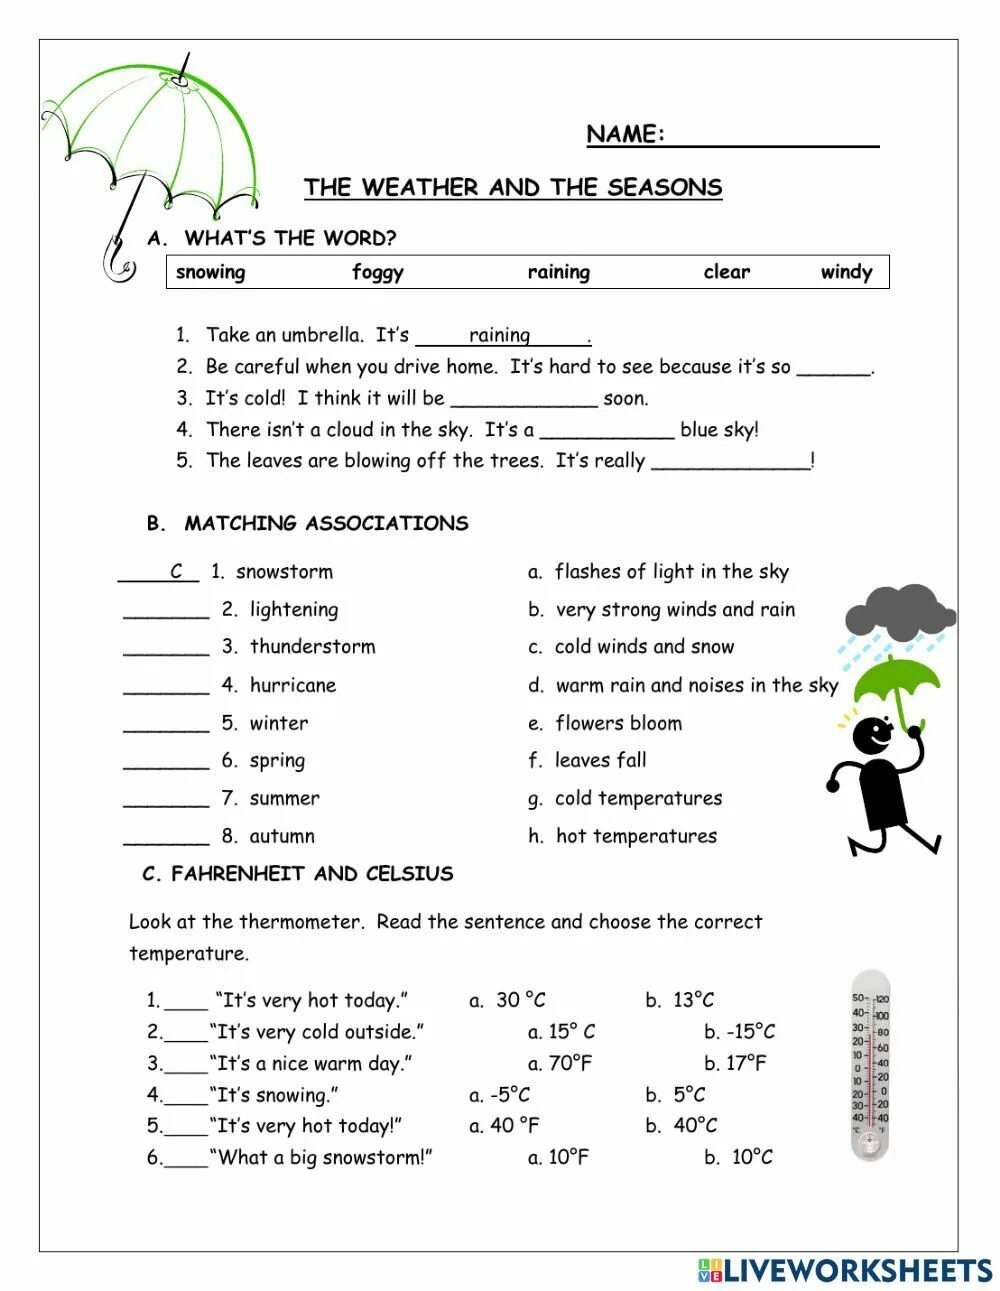 Hot today перевод на русский. Weather Worksheets на английском. Weather Worksheet 2 класс английский. Погода на английском Worksheets. Seasons упражнения английский язык.